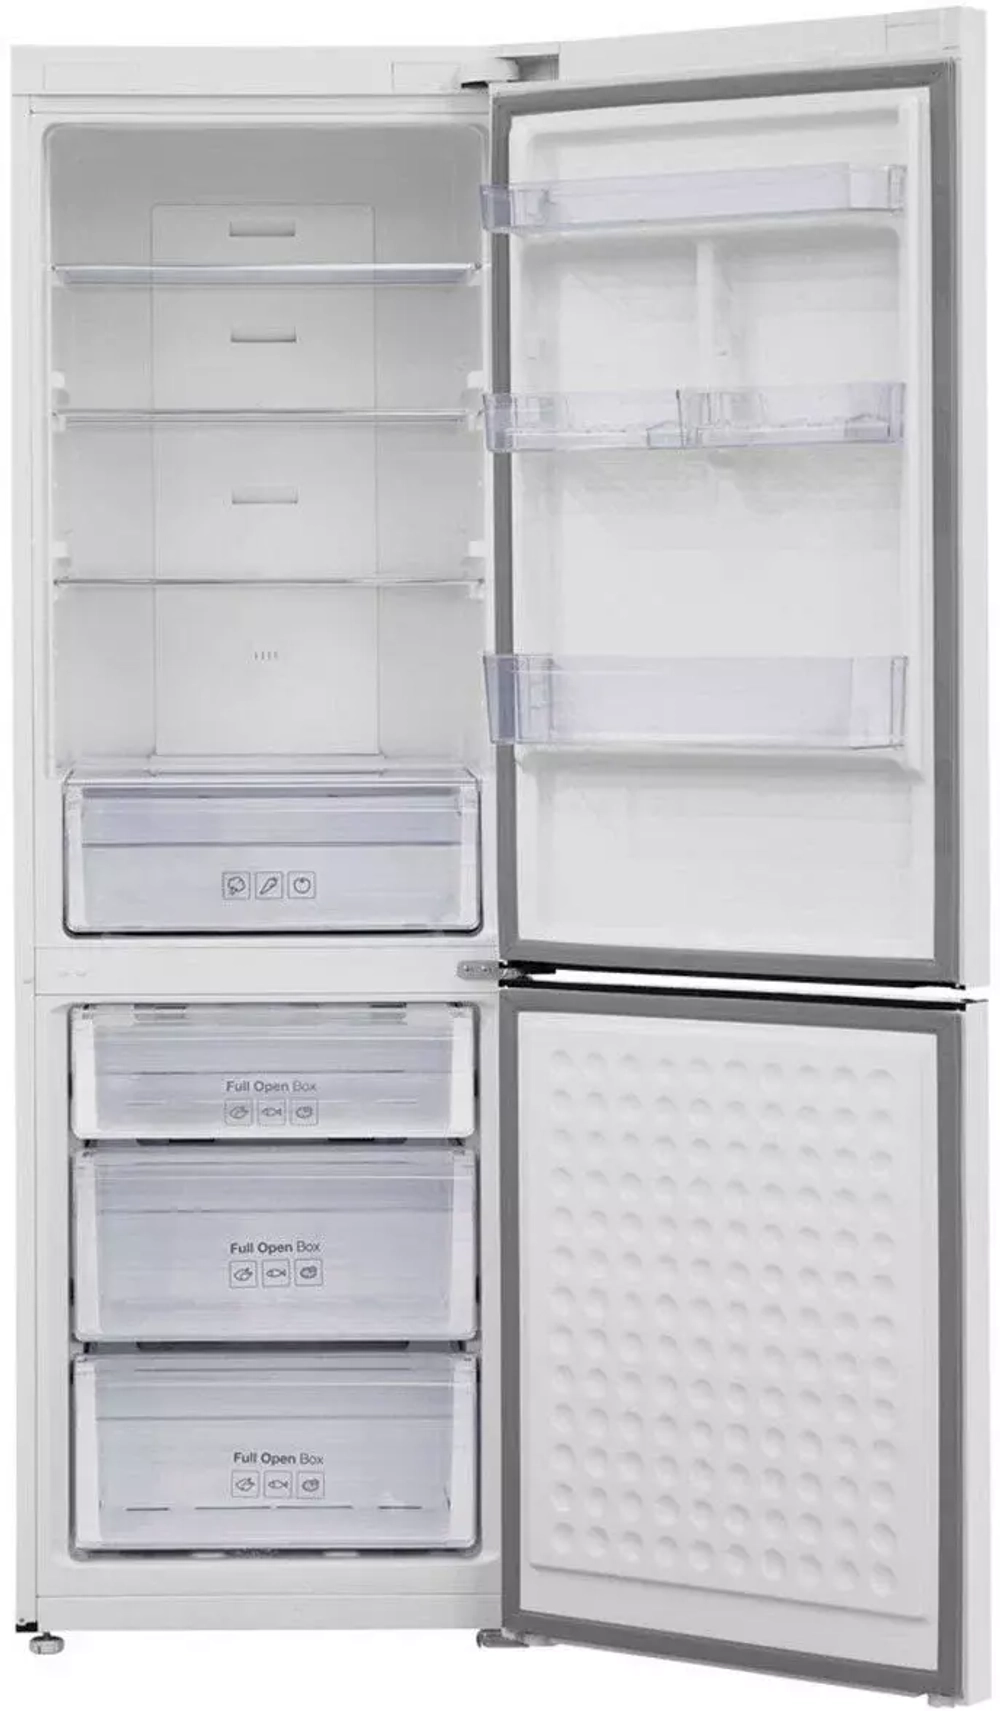 Холодильник с нижней морозильной камерой Artel HD455RWENE Wh (DU)